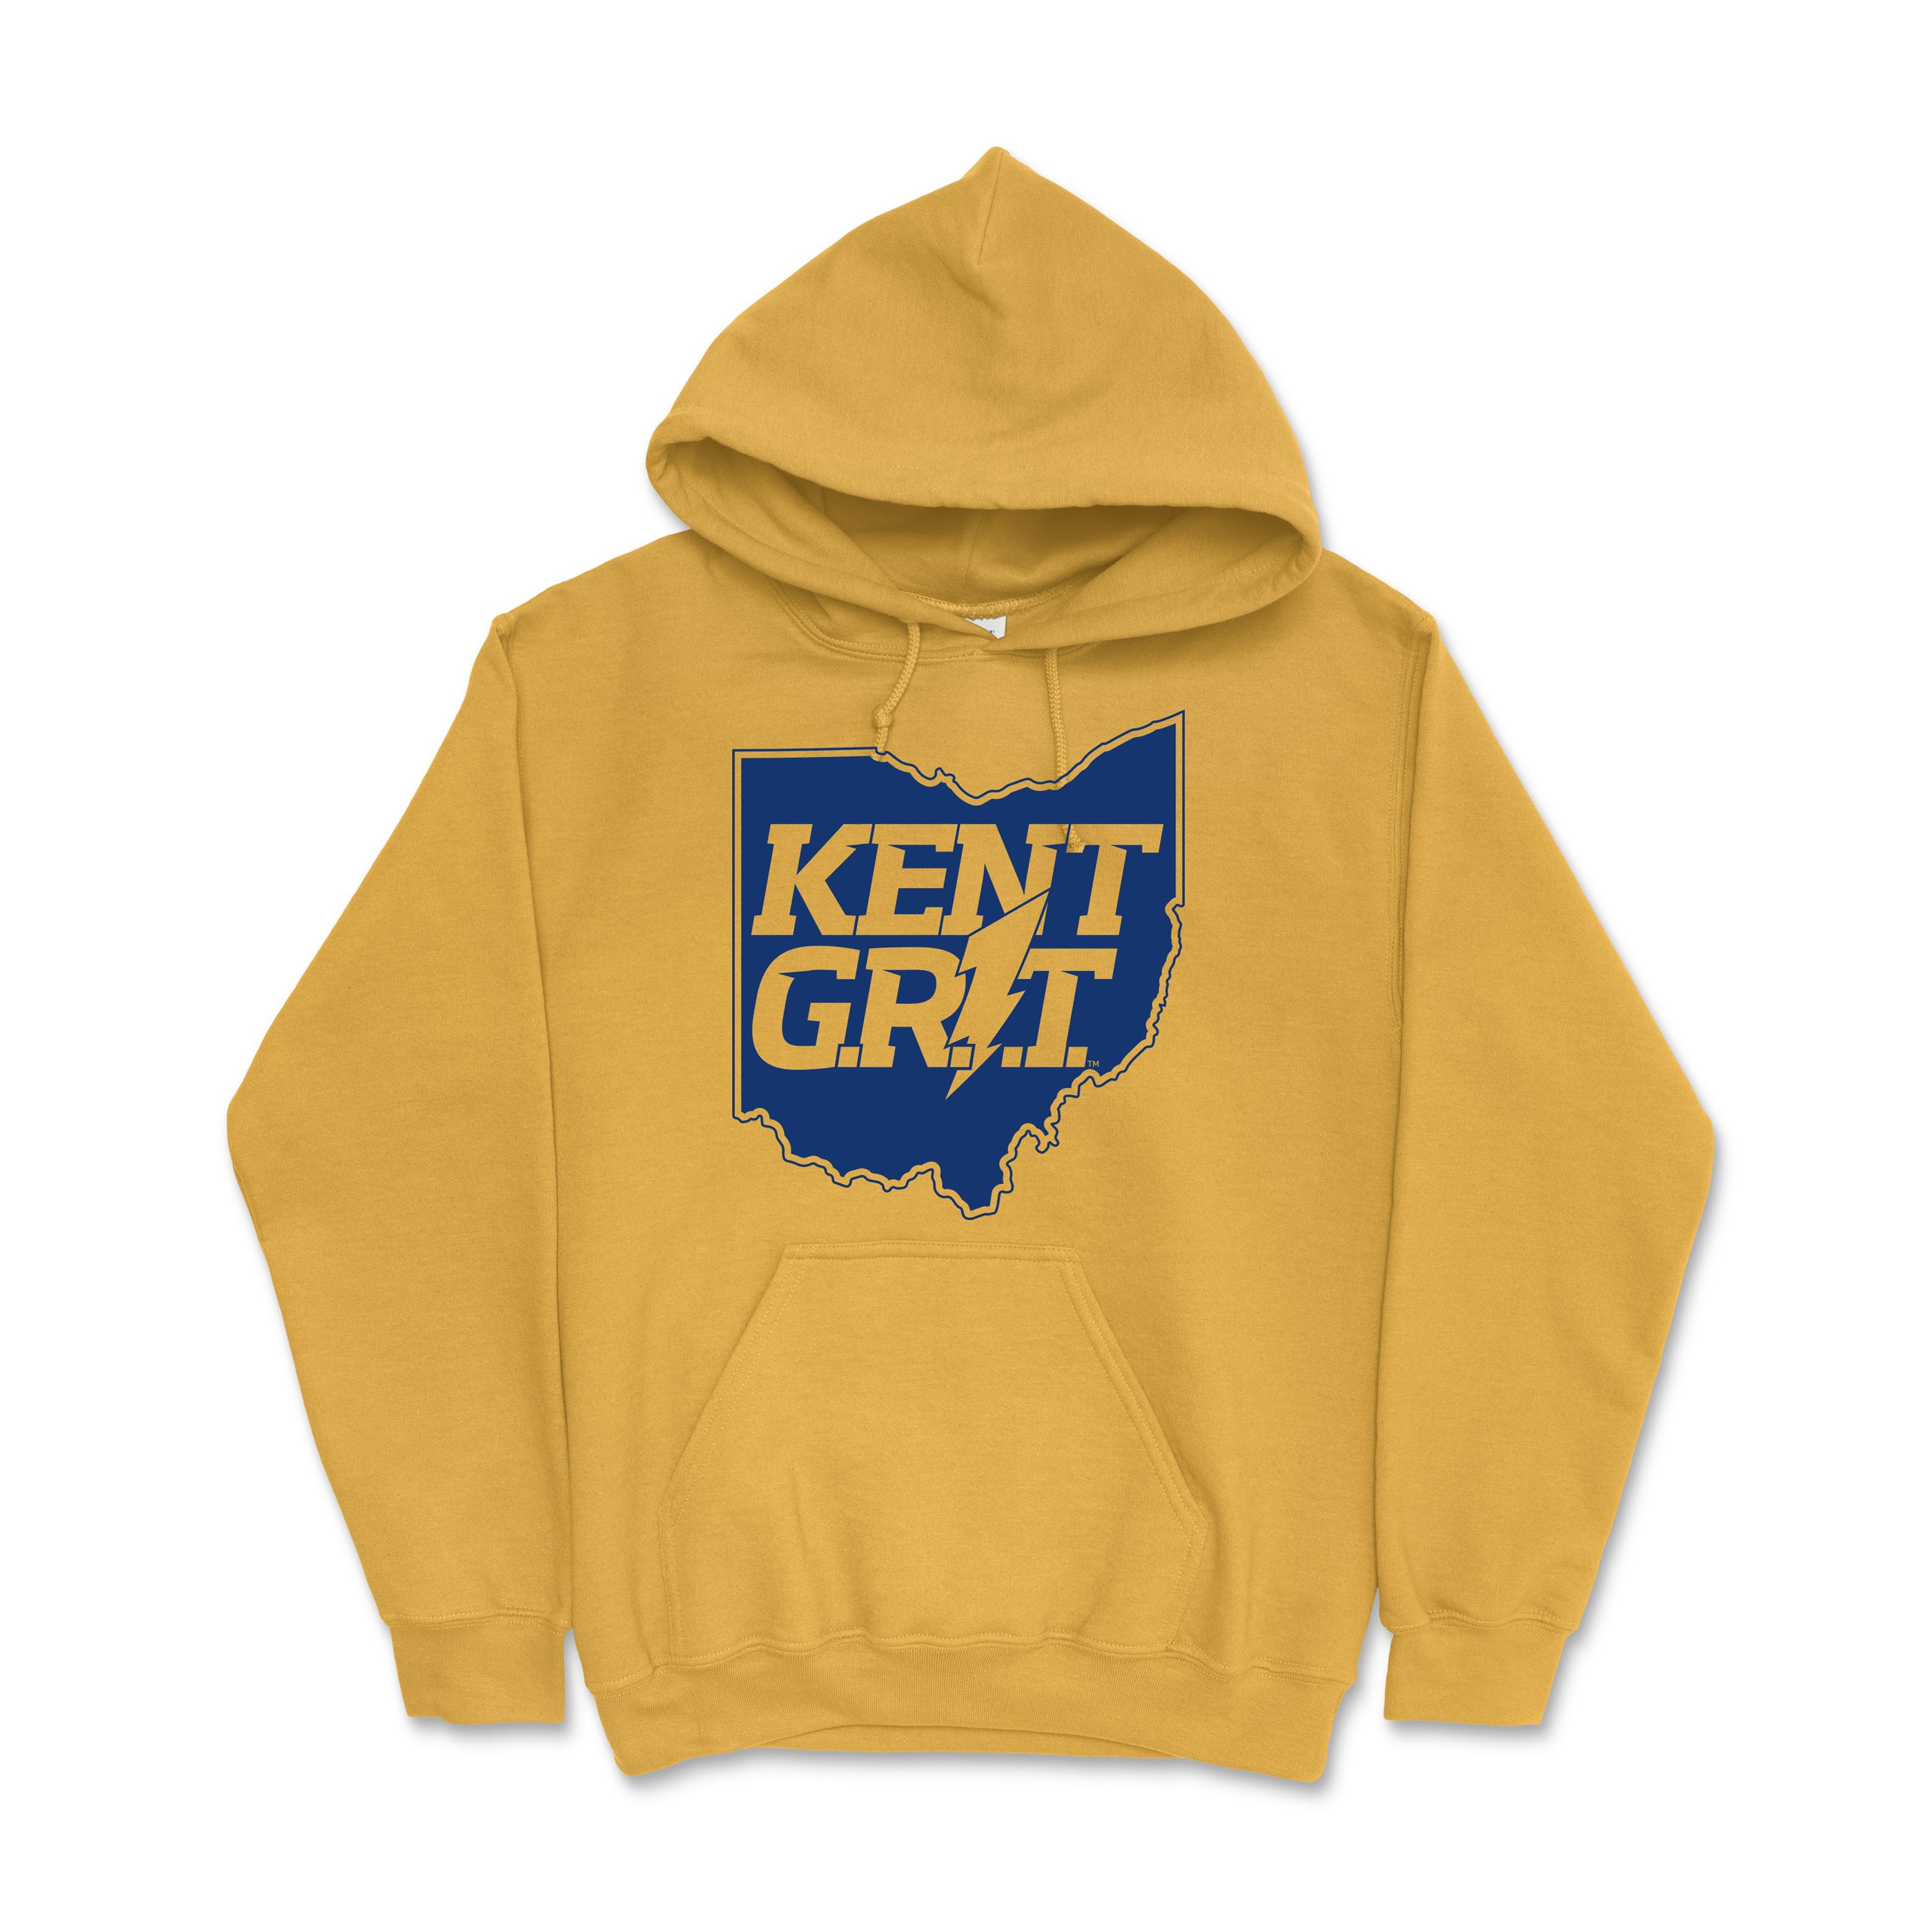 Kent Grit Gold Hoodie